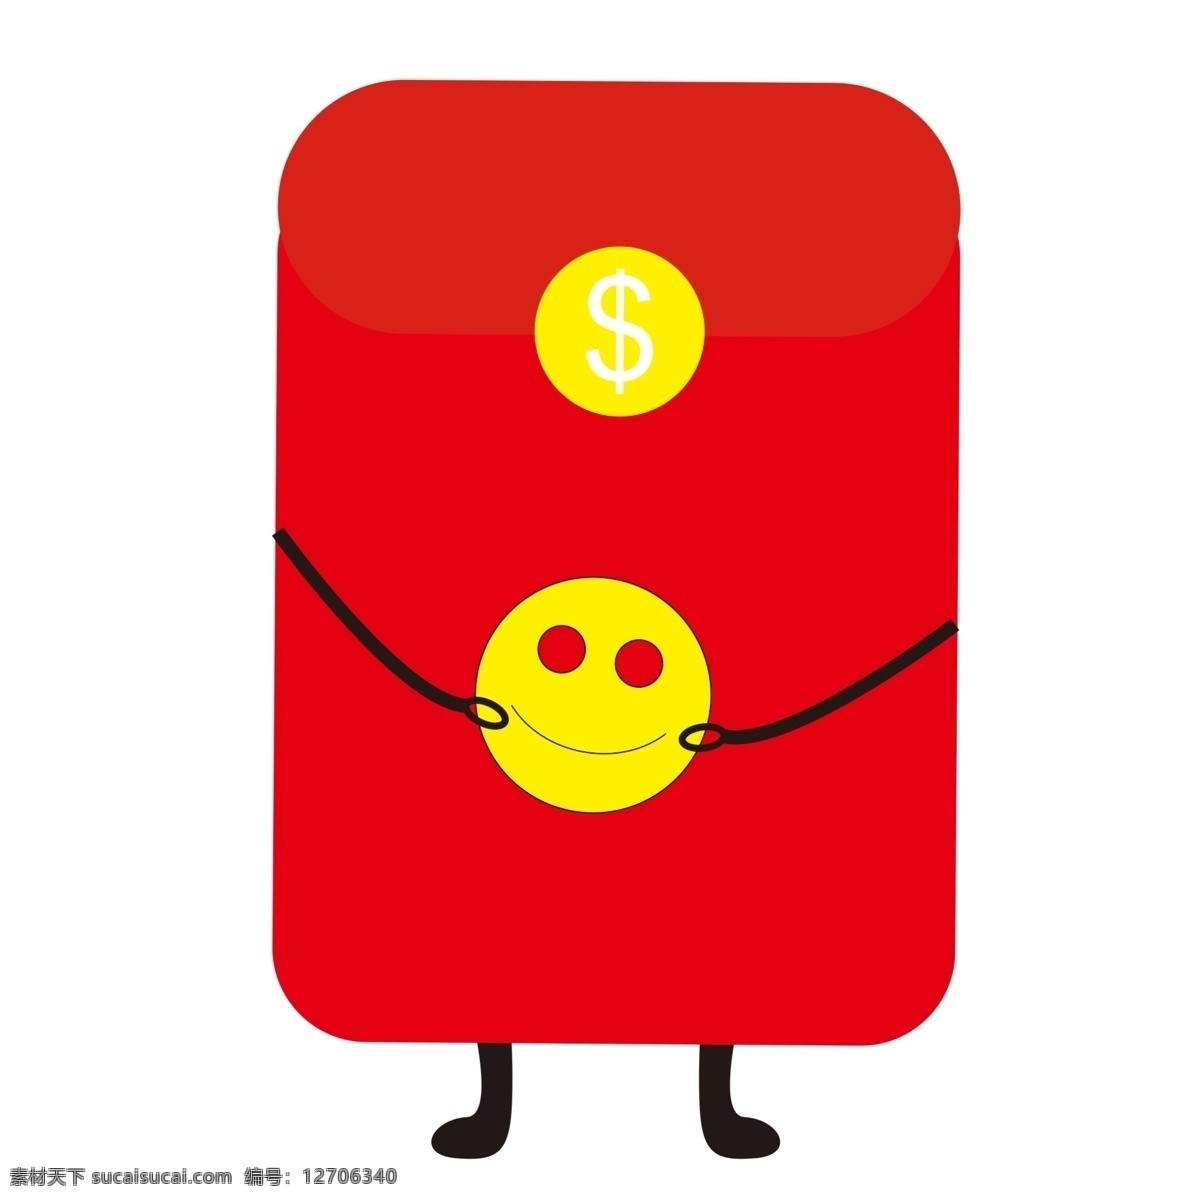 可爱 拟人 笑脸 红包 手绘红包插画 拟人的红包 红色的红包 卡通插画 金币 金色的钱币 可爱拟人红包